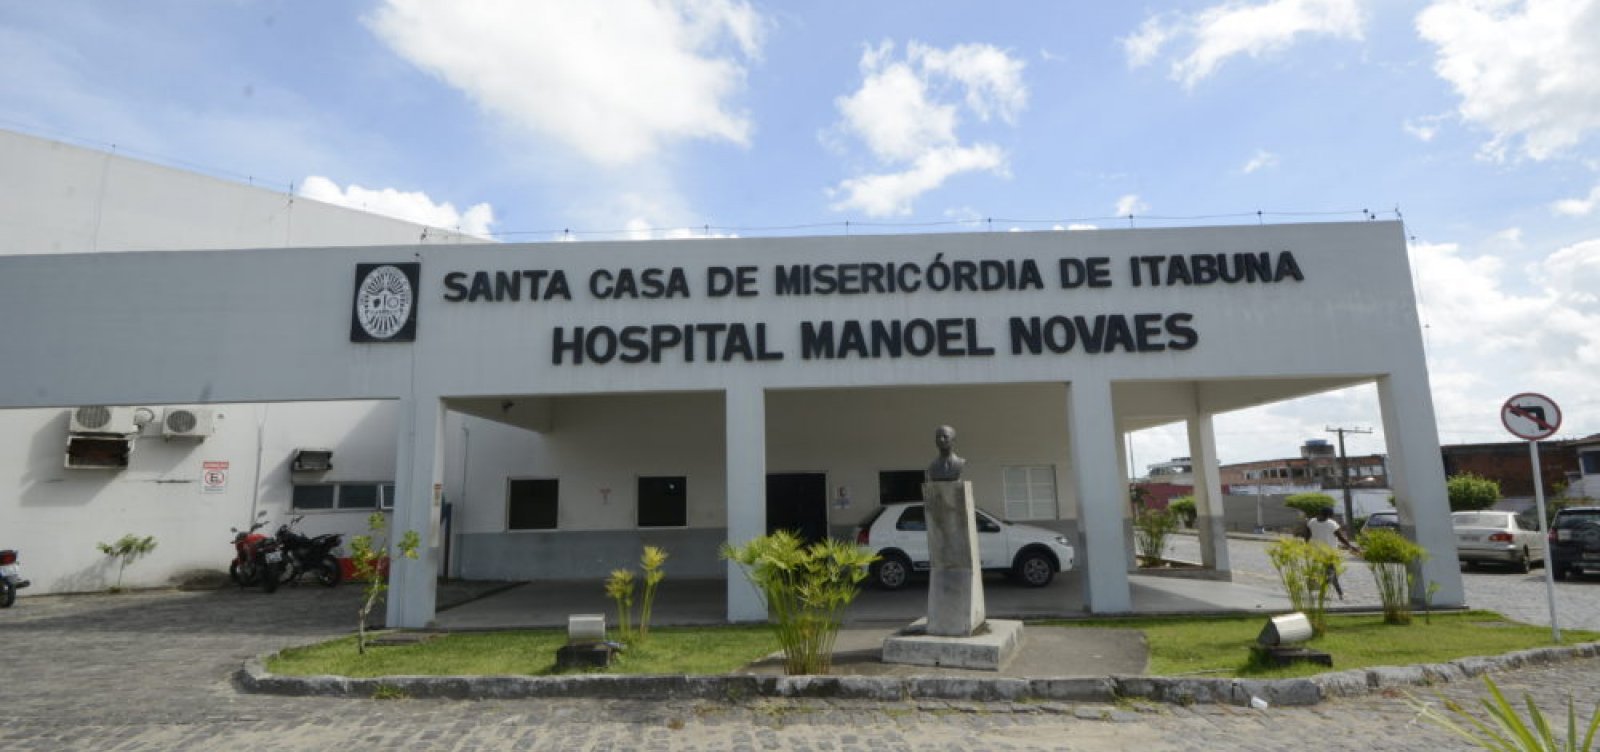 Justiça autoriza exumação de bebês trocados em hospital de Itabuna